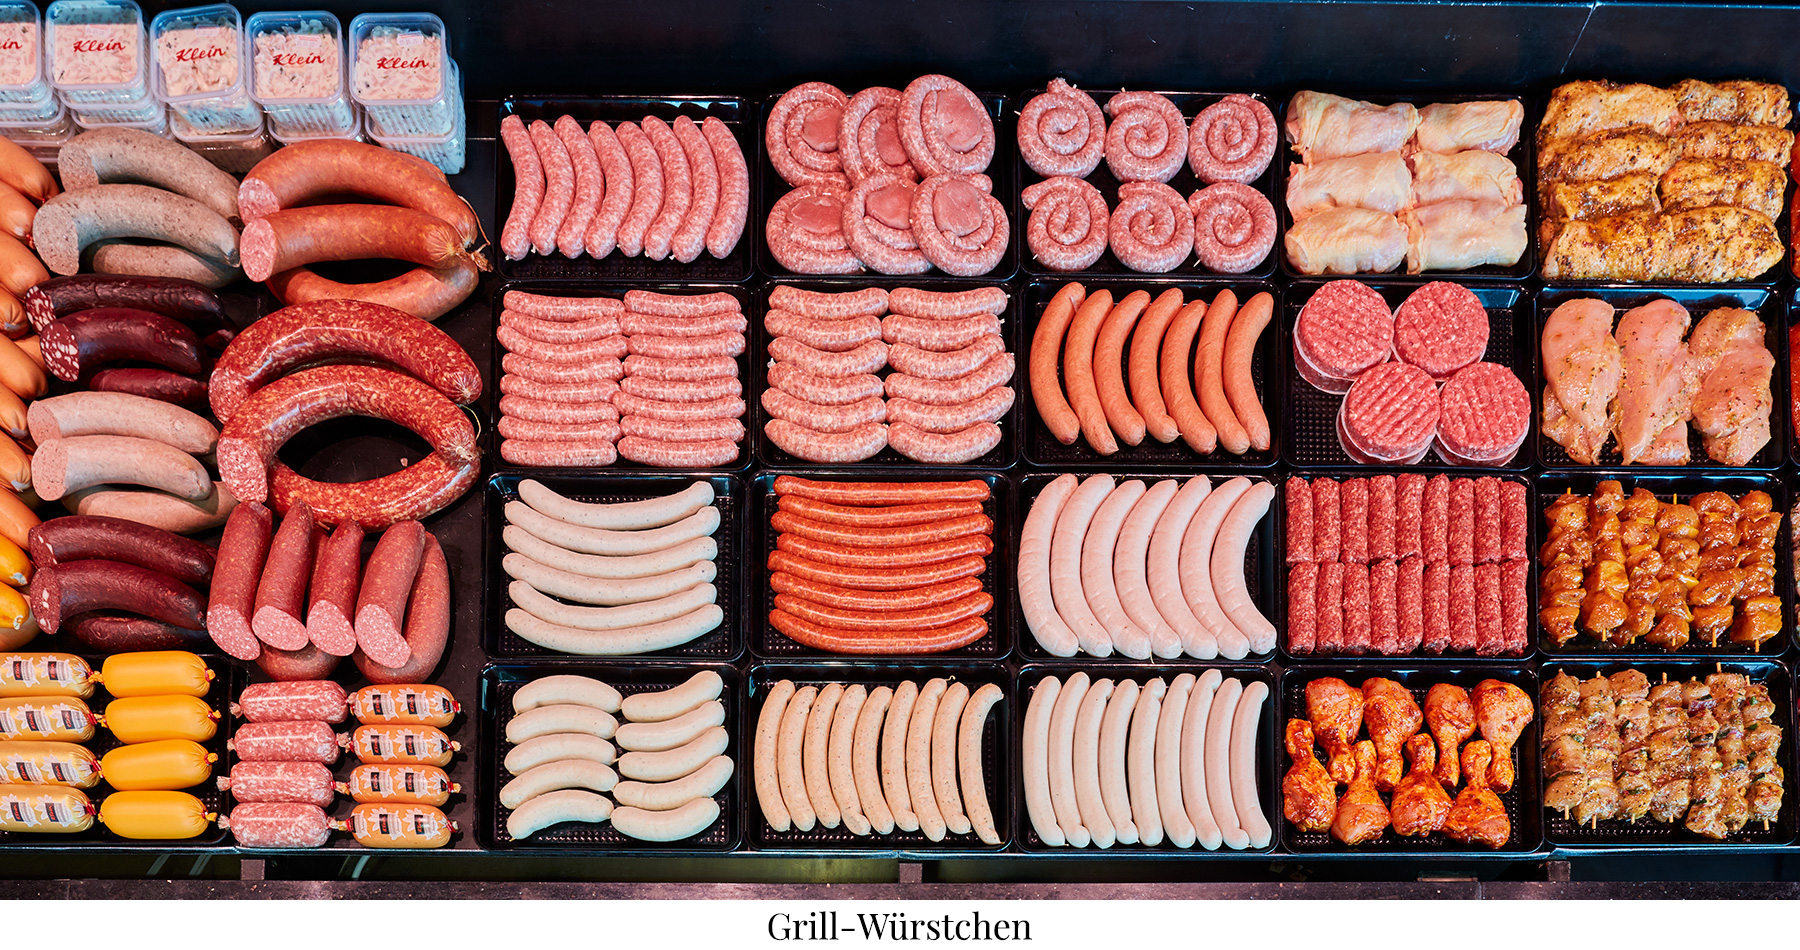 Das Bild zeigt eine Fleischtheke mit Grillwurst